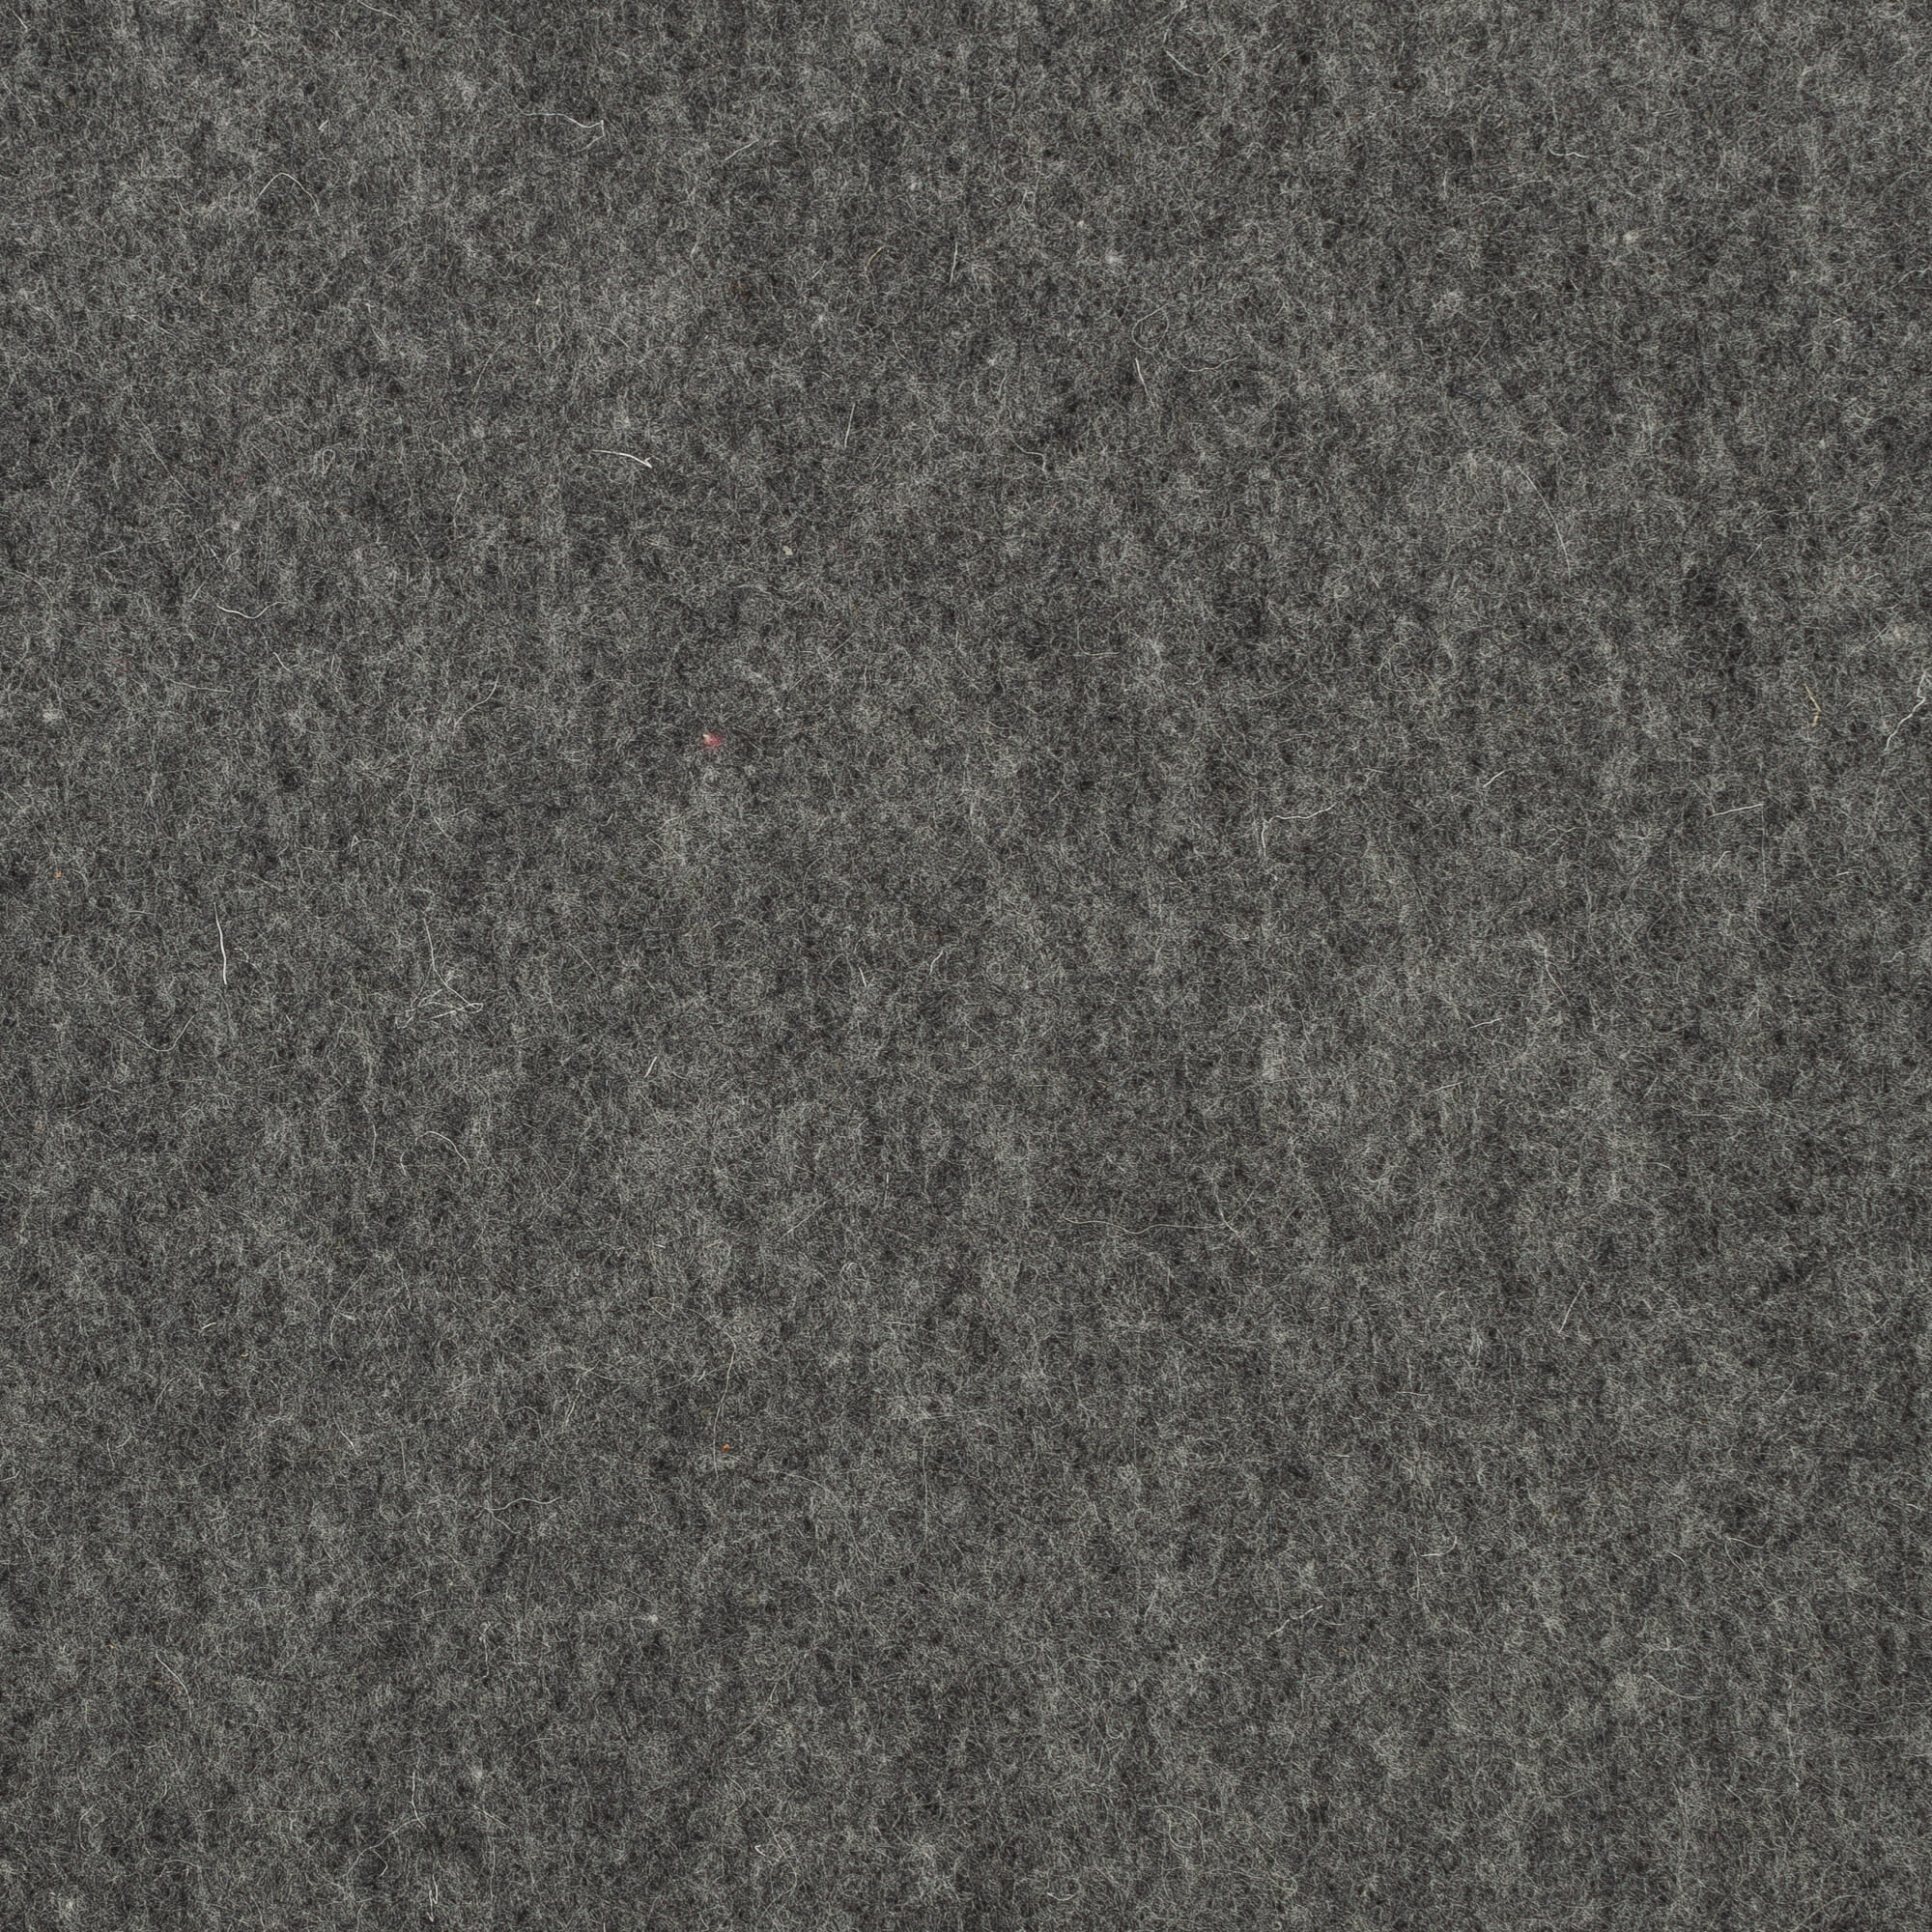 High Quality 100% Wool Felt Sheets - 1.2 mm - Heathered Dark Grey